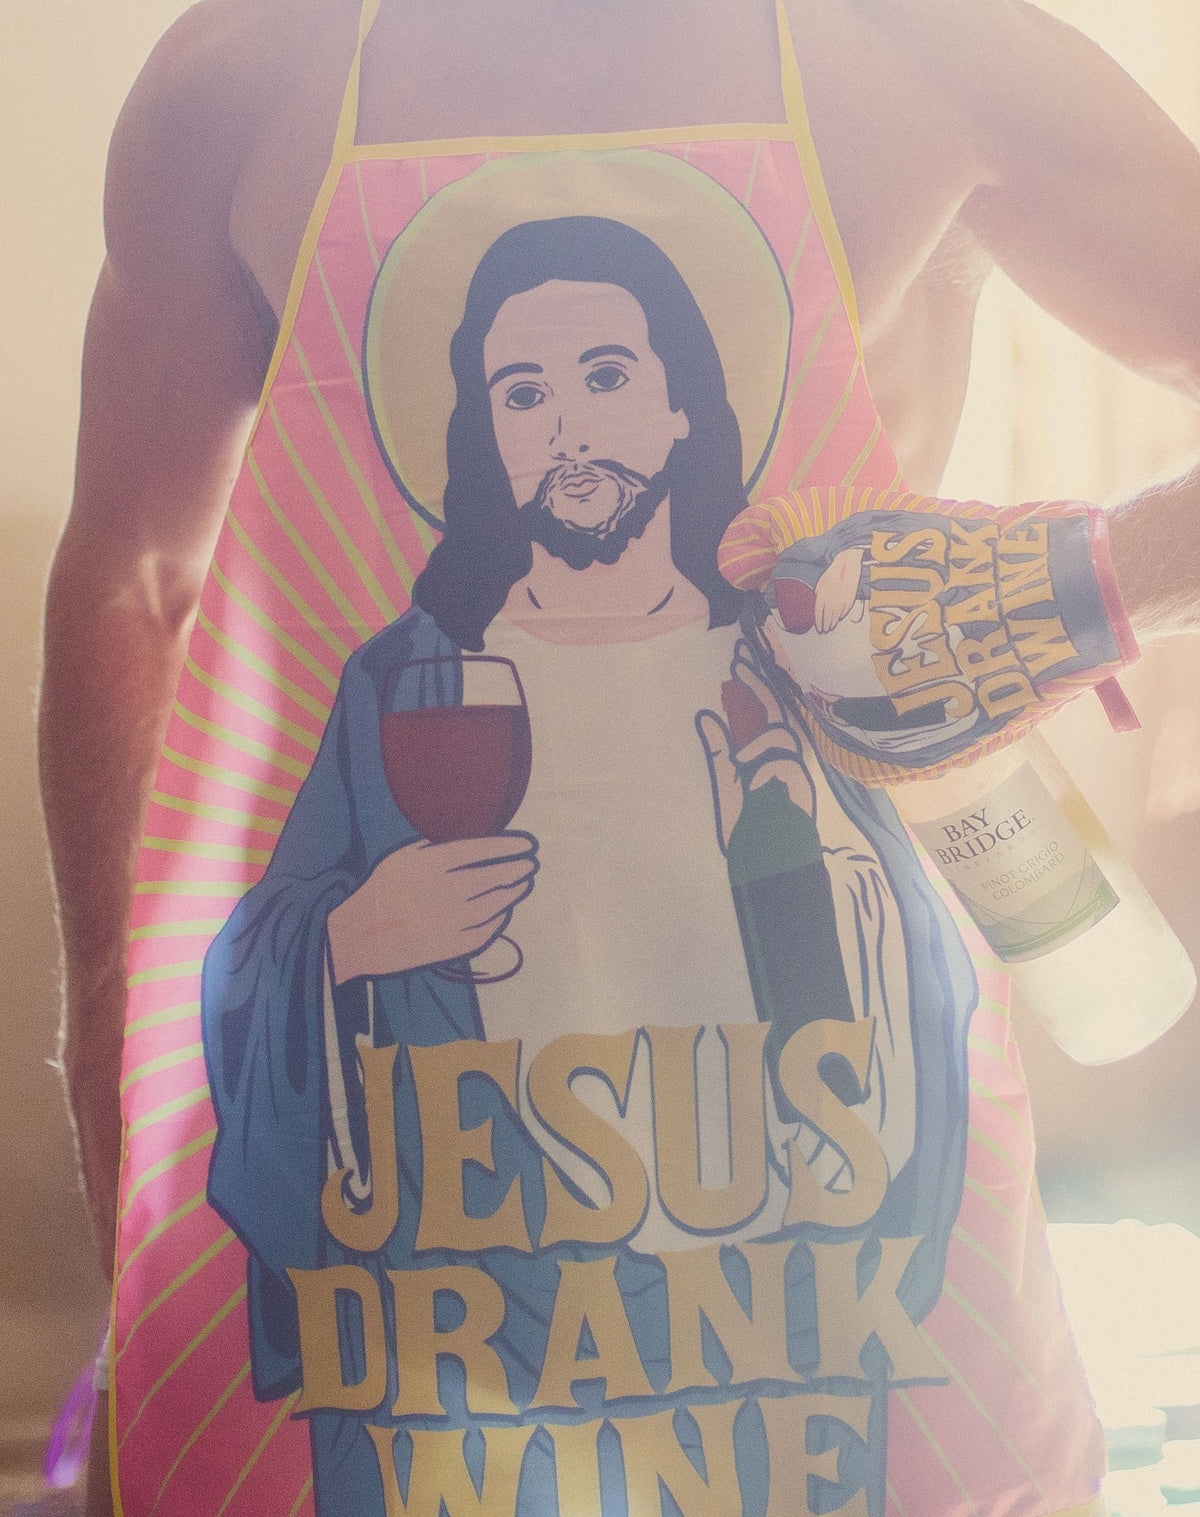 Jesus Drank Wine